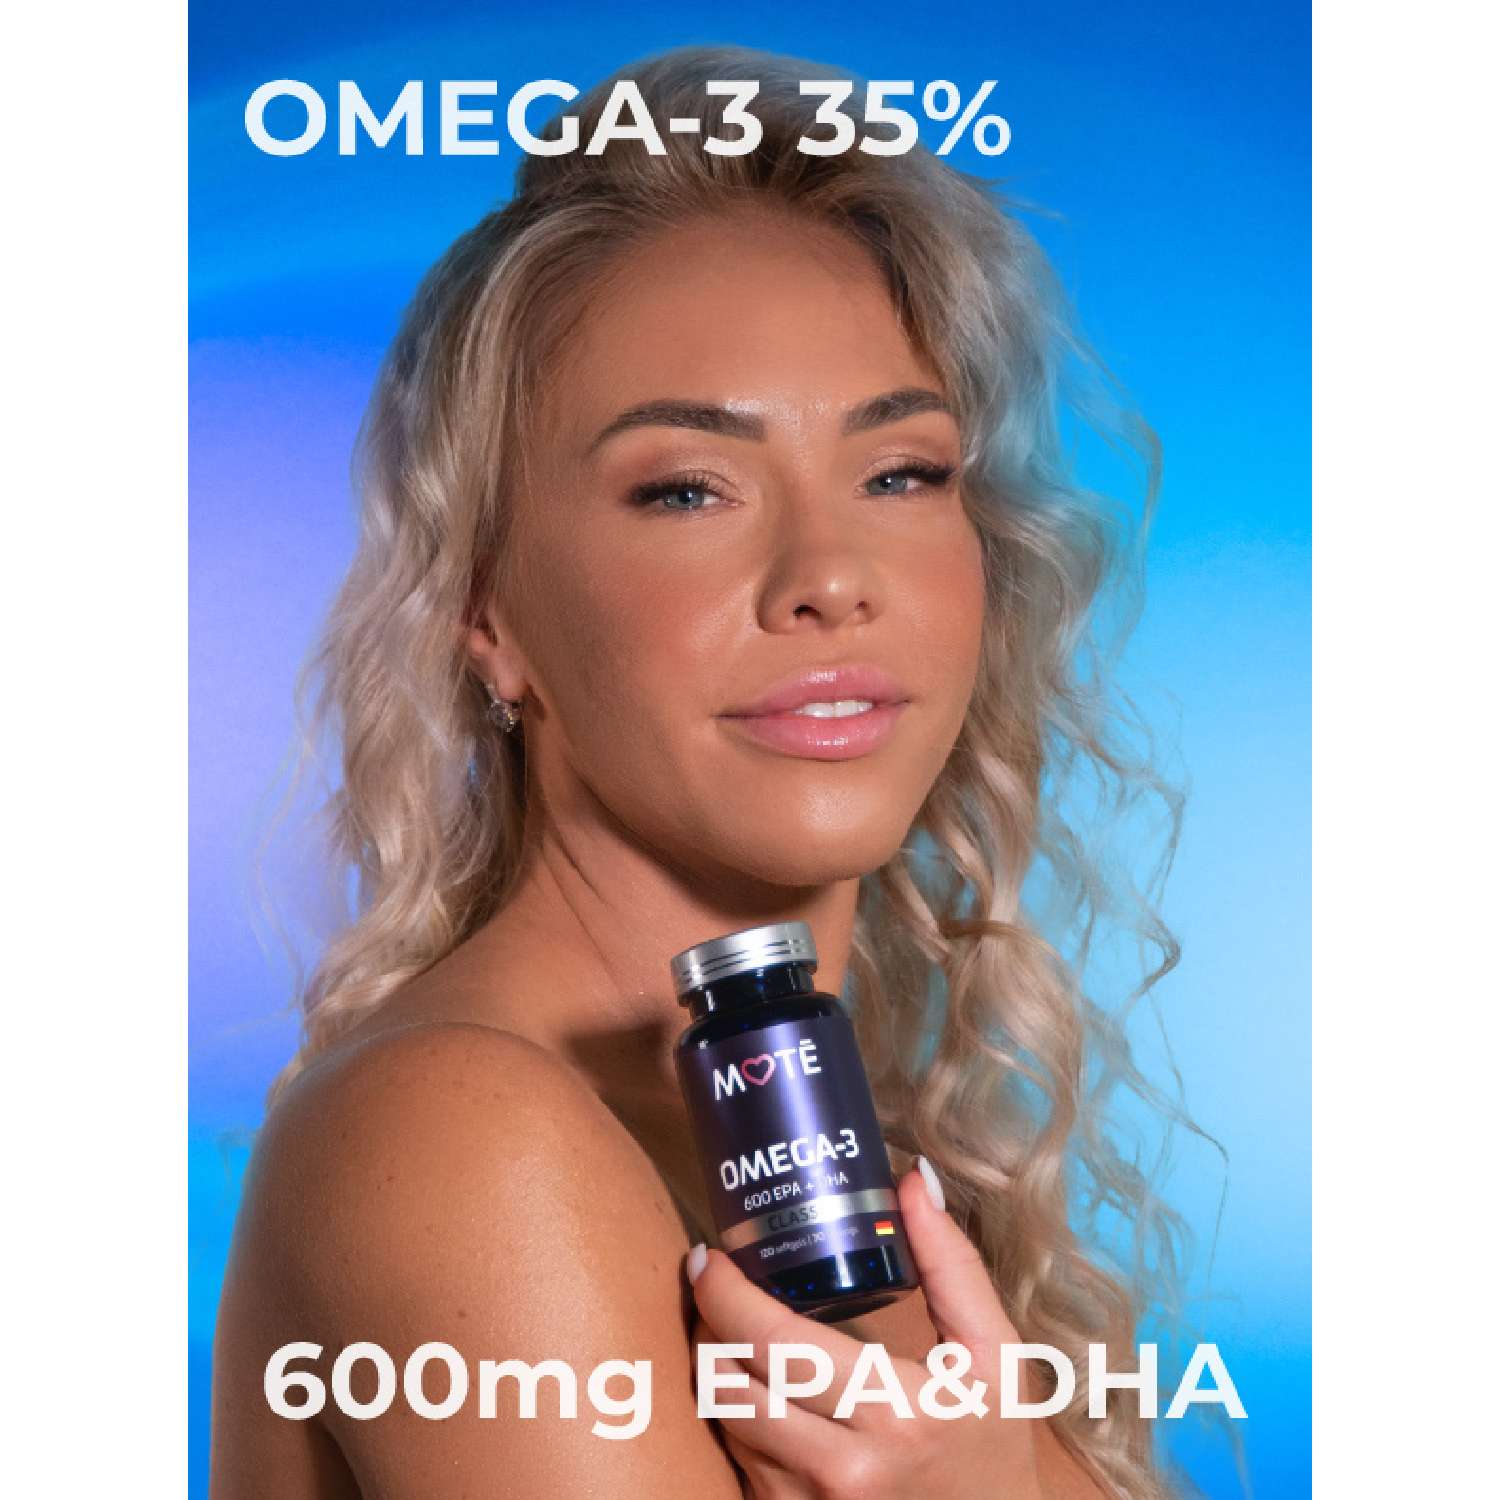 Омега 3 35% Mote / Мотэ 600 EPA DHA - фото 2